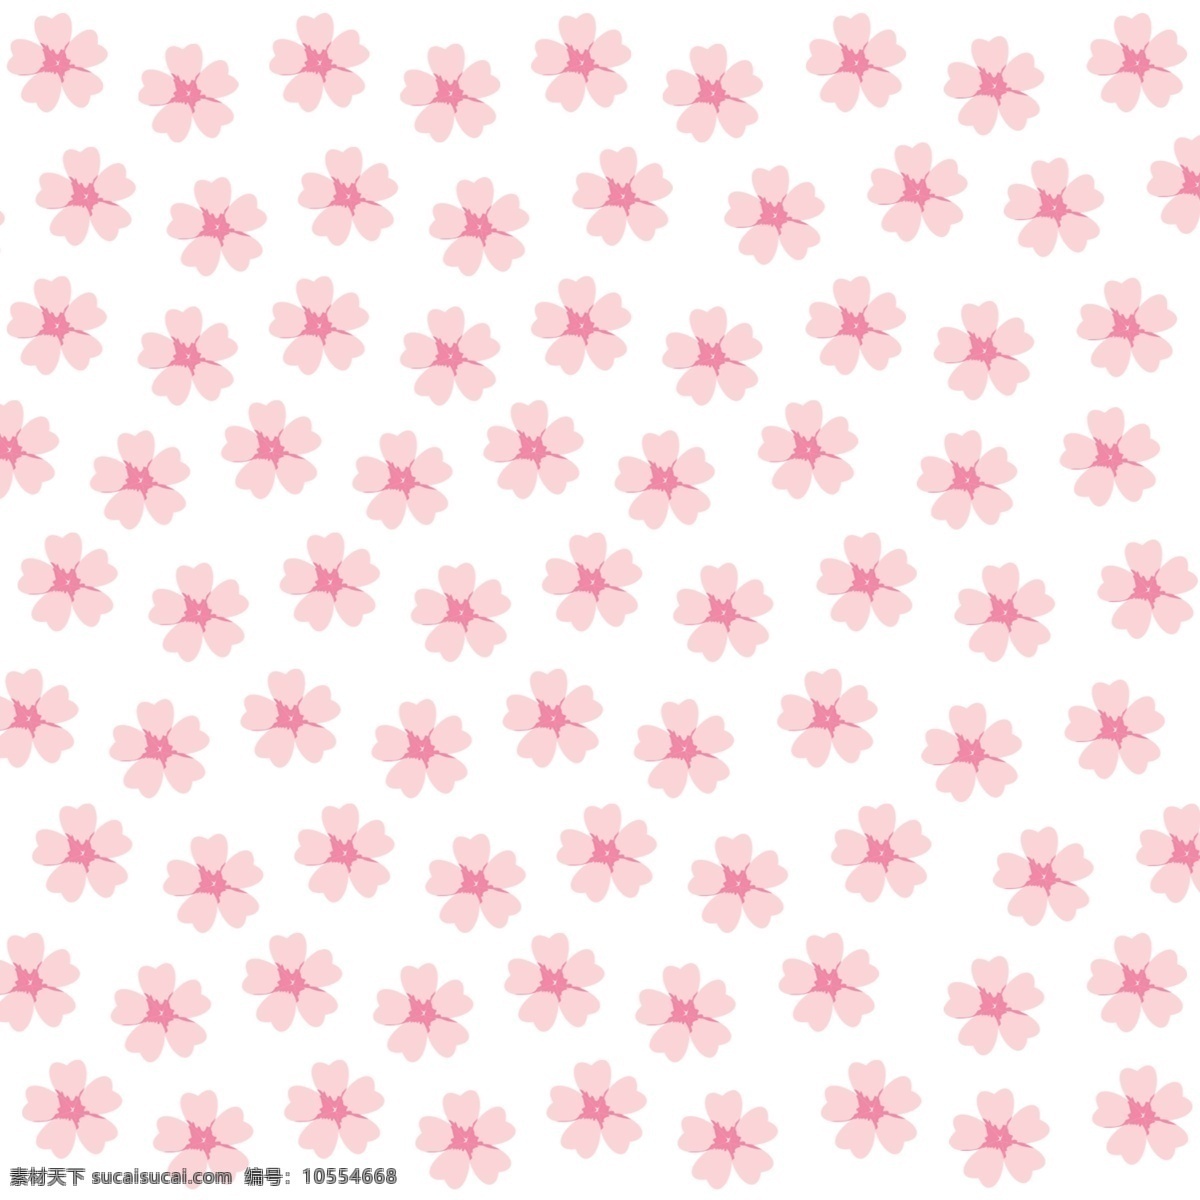 樱花花朵图片 樱花花朵 花朵设计 樱花设计 油纸设计 樱花油纸 淘宝界面设计